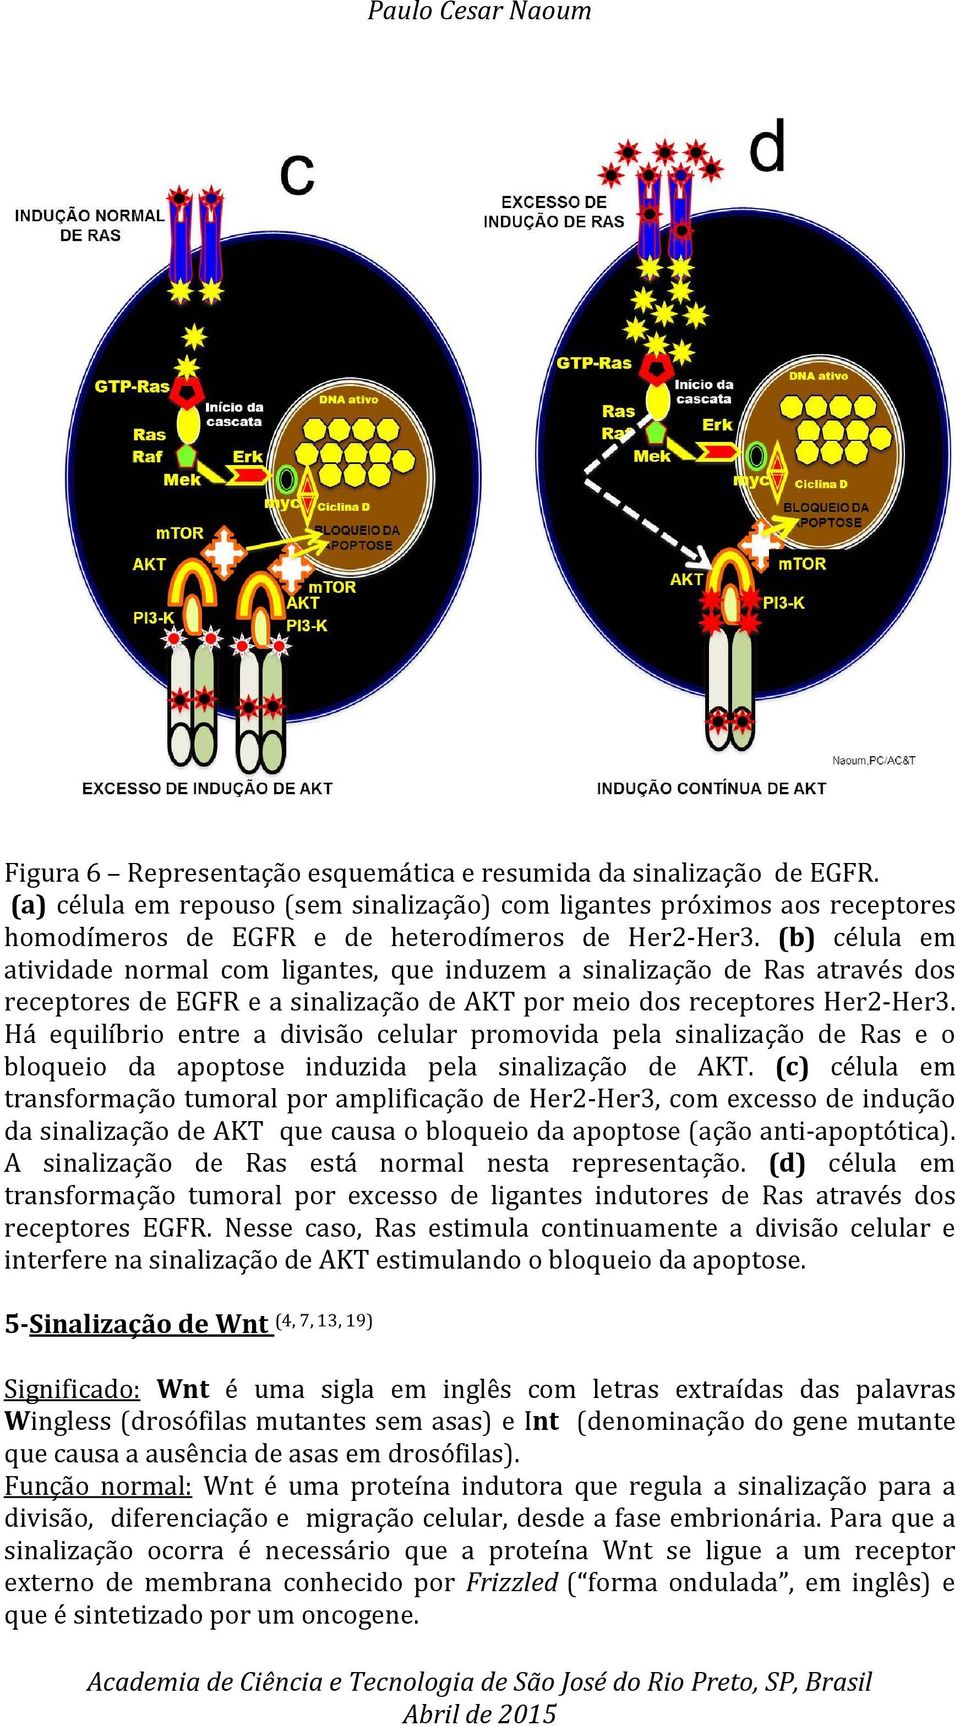 Há equilíbrio entre a divisão celular promovida pela sinalização de Ras e o bloqueio da apoptose induzida pela sinalização de AKT.